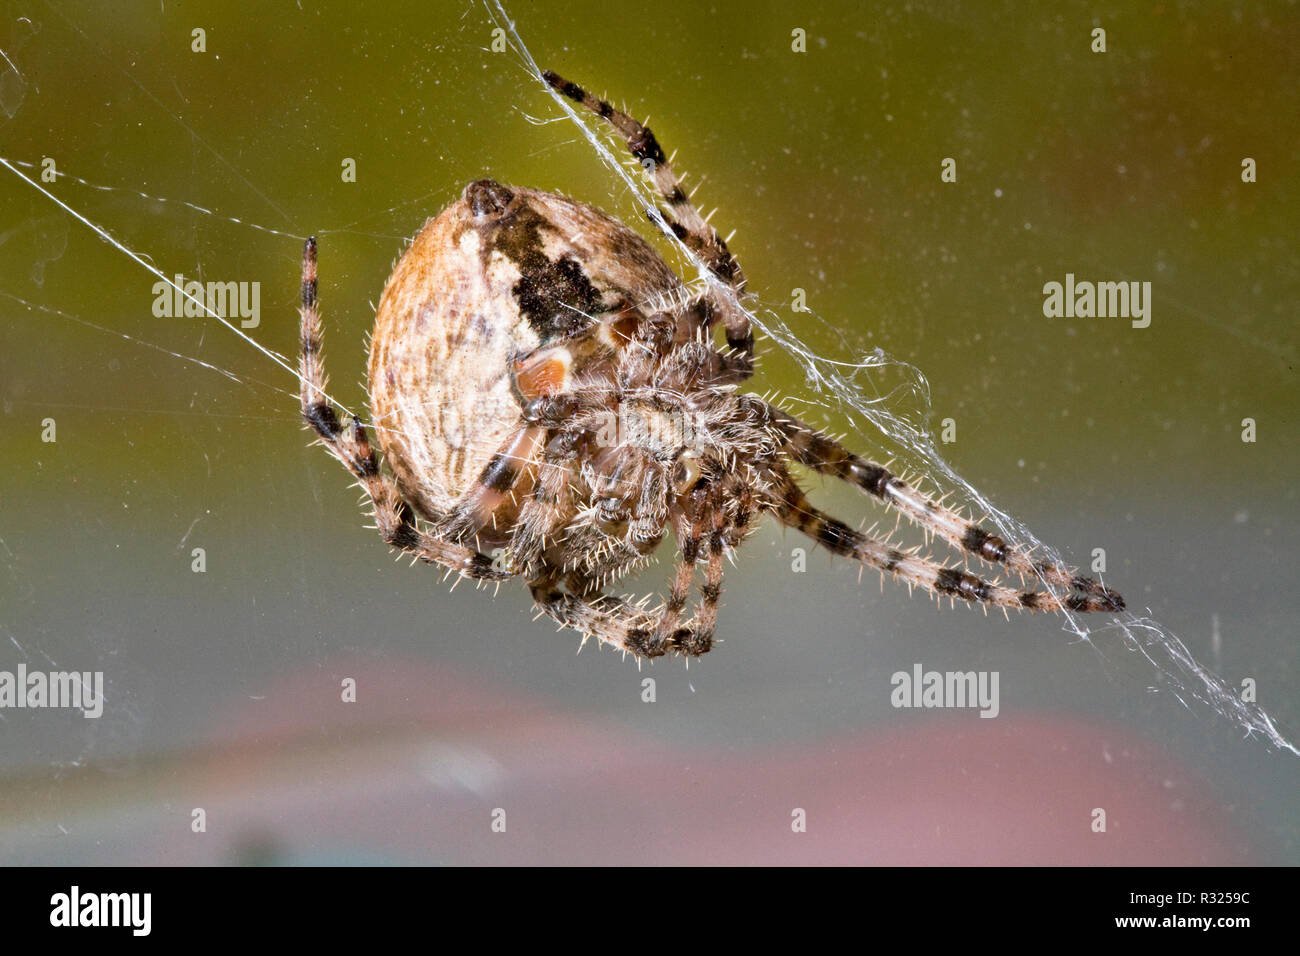 Una grande croce orbweaver spider, Araneus diadematus appese a fili di seta nella sua web. Foto Stock